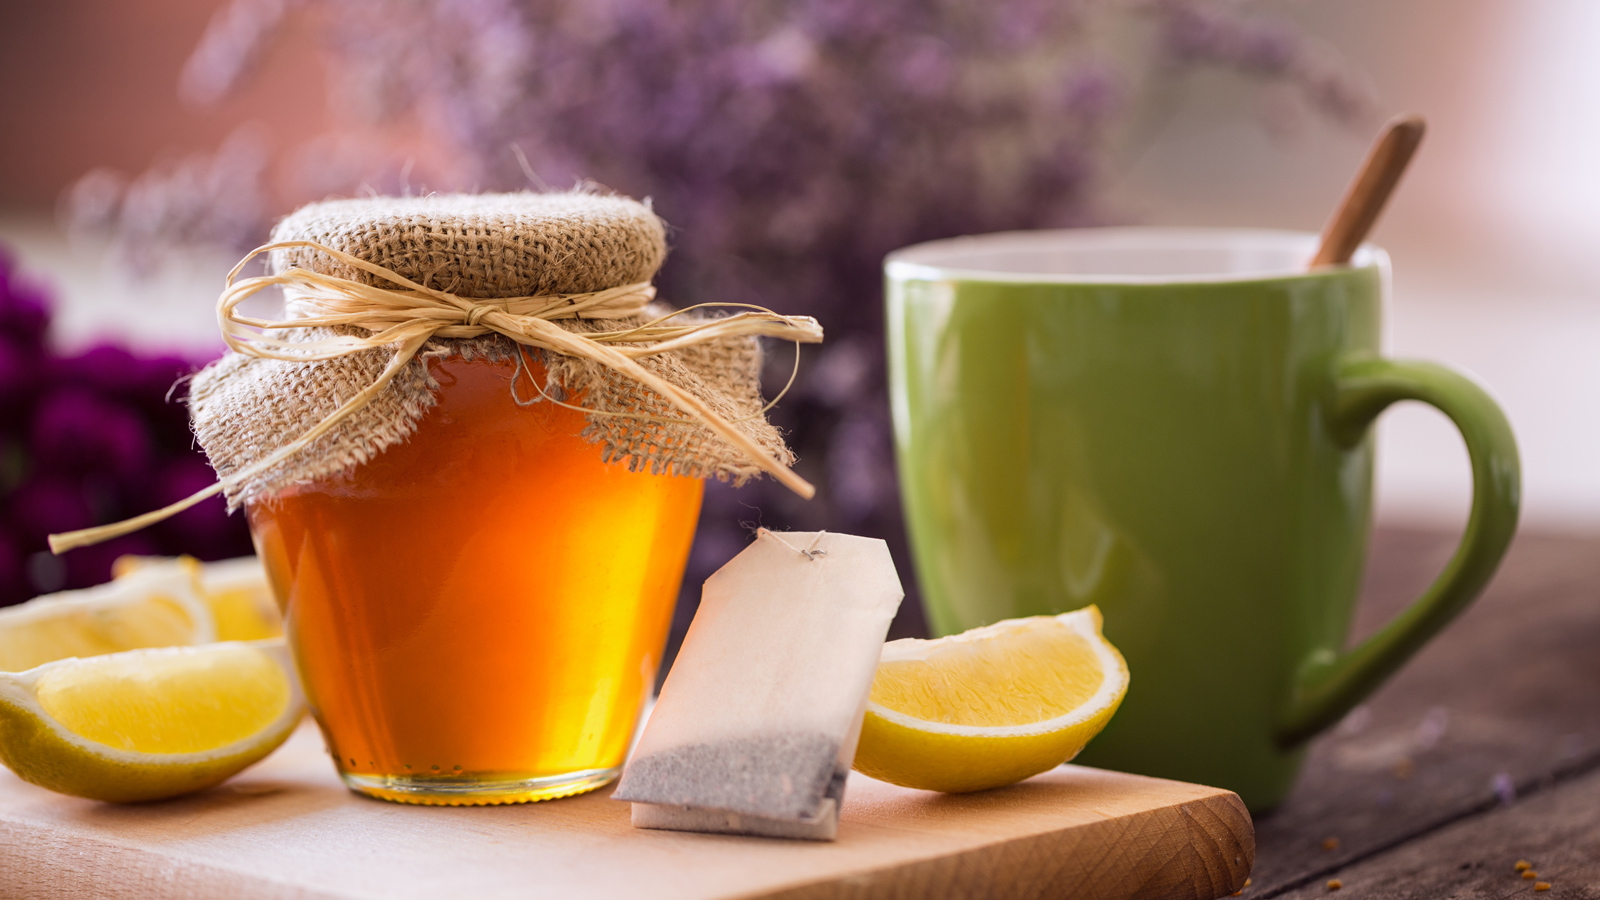 Nhấm nháp một cốc nước chanh mật ong nóng ngon ngọt vào mỗi sáng sớm được cho rằng giúp thanh lọc cơ thể và giảm cân. Nhưng liệu khoa học có ủng hộ lời đồn từ dân gian?